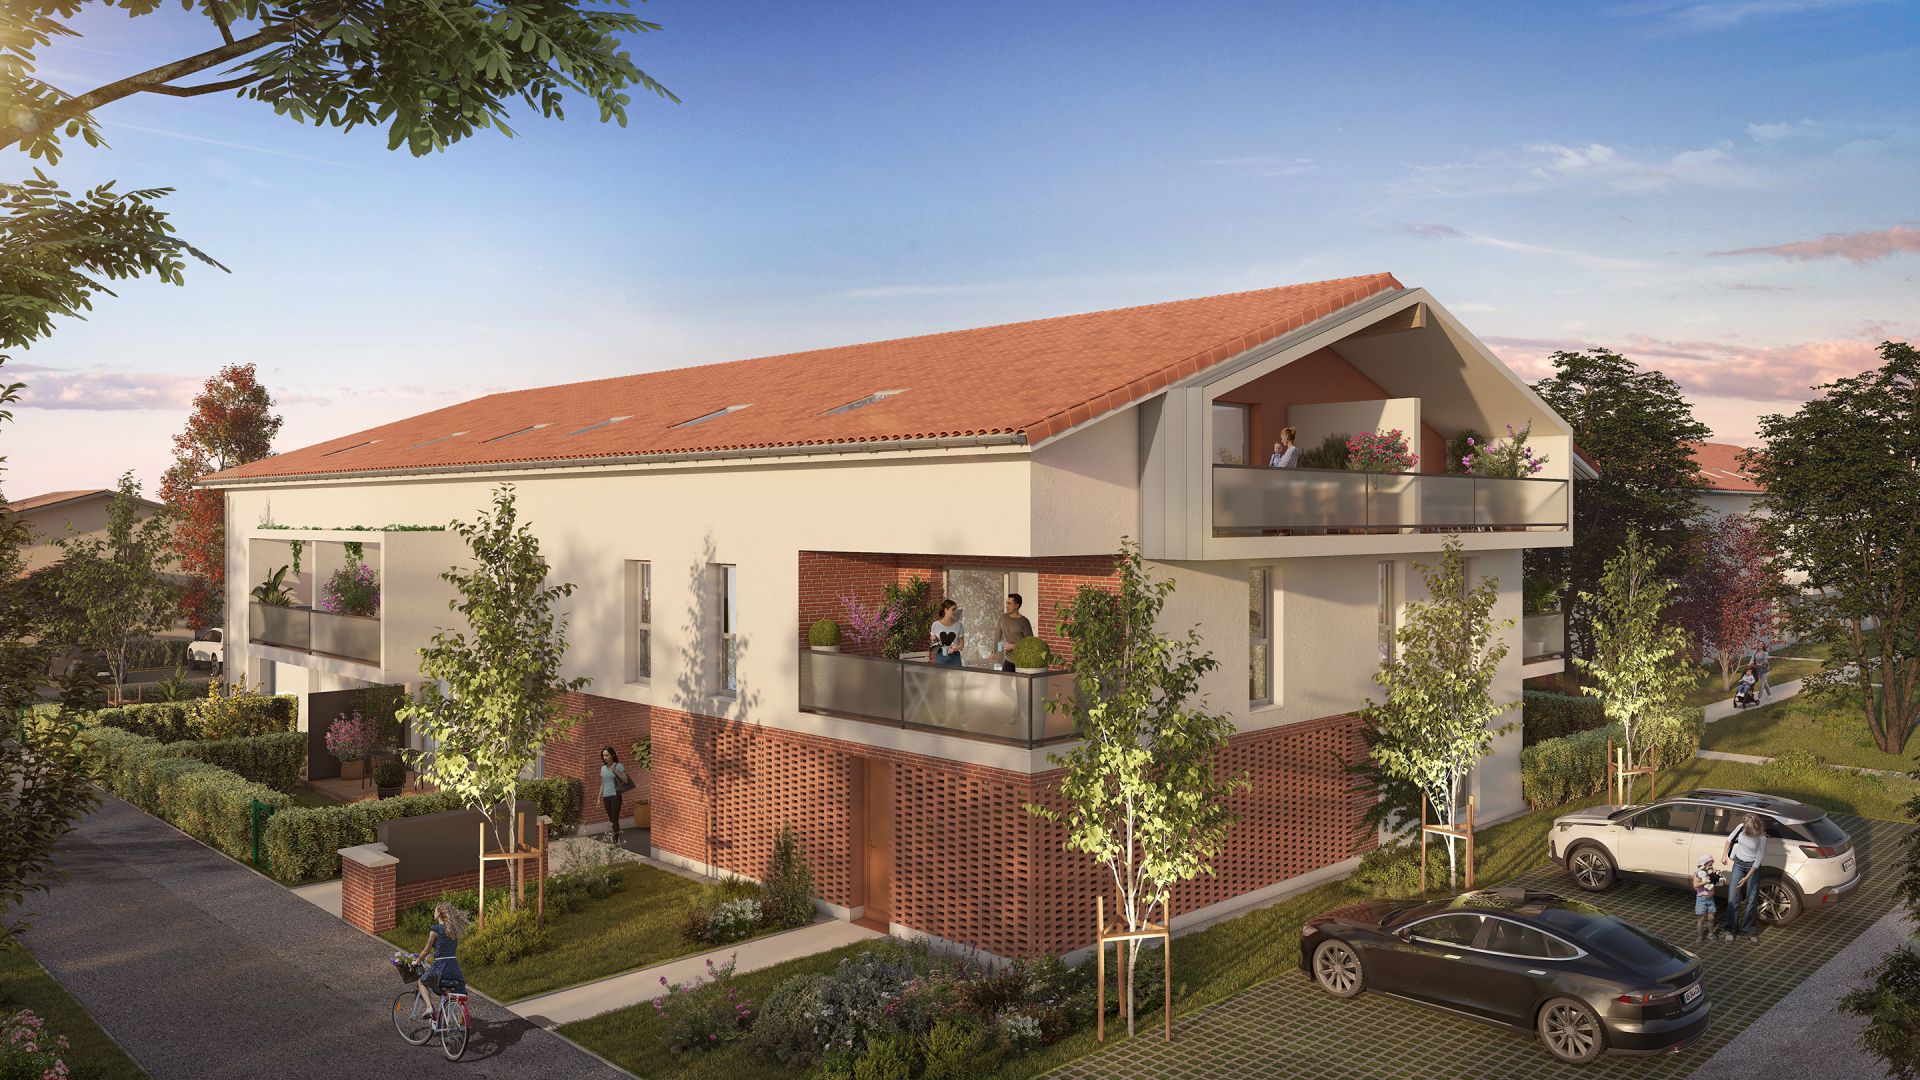 Greencity immobilier - achat appartements neufs du T2 au T3 - Résidence Le Bellefont - Roquettes 31120